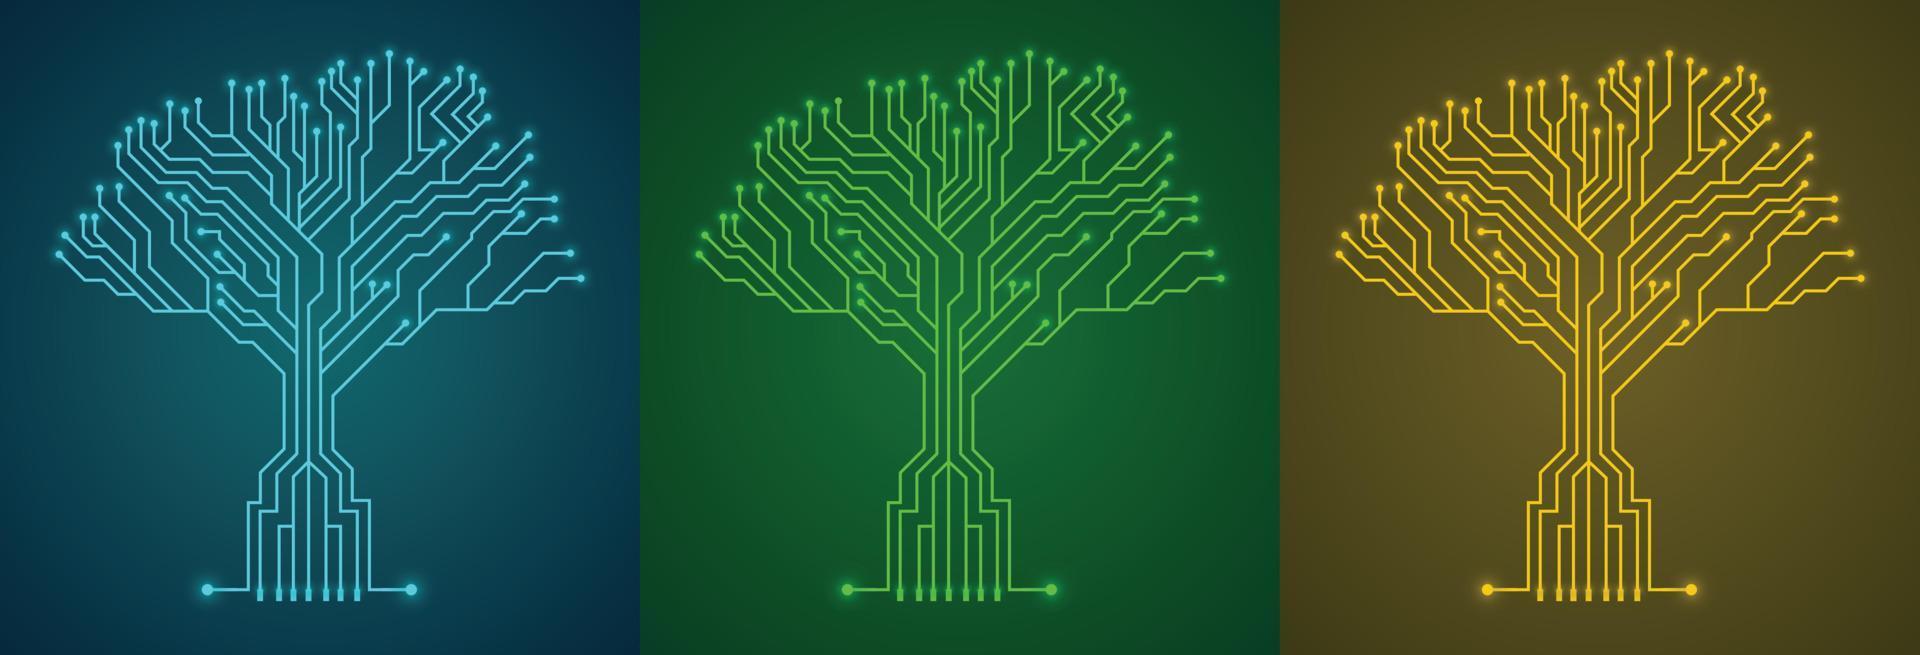 Schaltkreis Tafel Baum einstellen mit anders Farben, Technologie Hintergrund Konzept Vektor Illustration